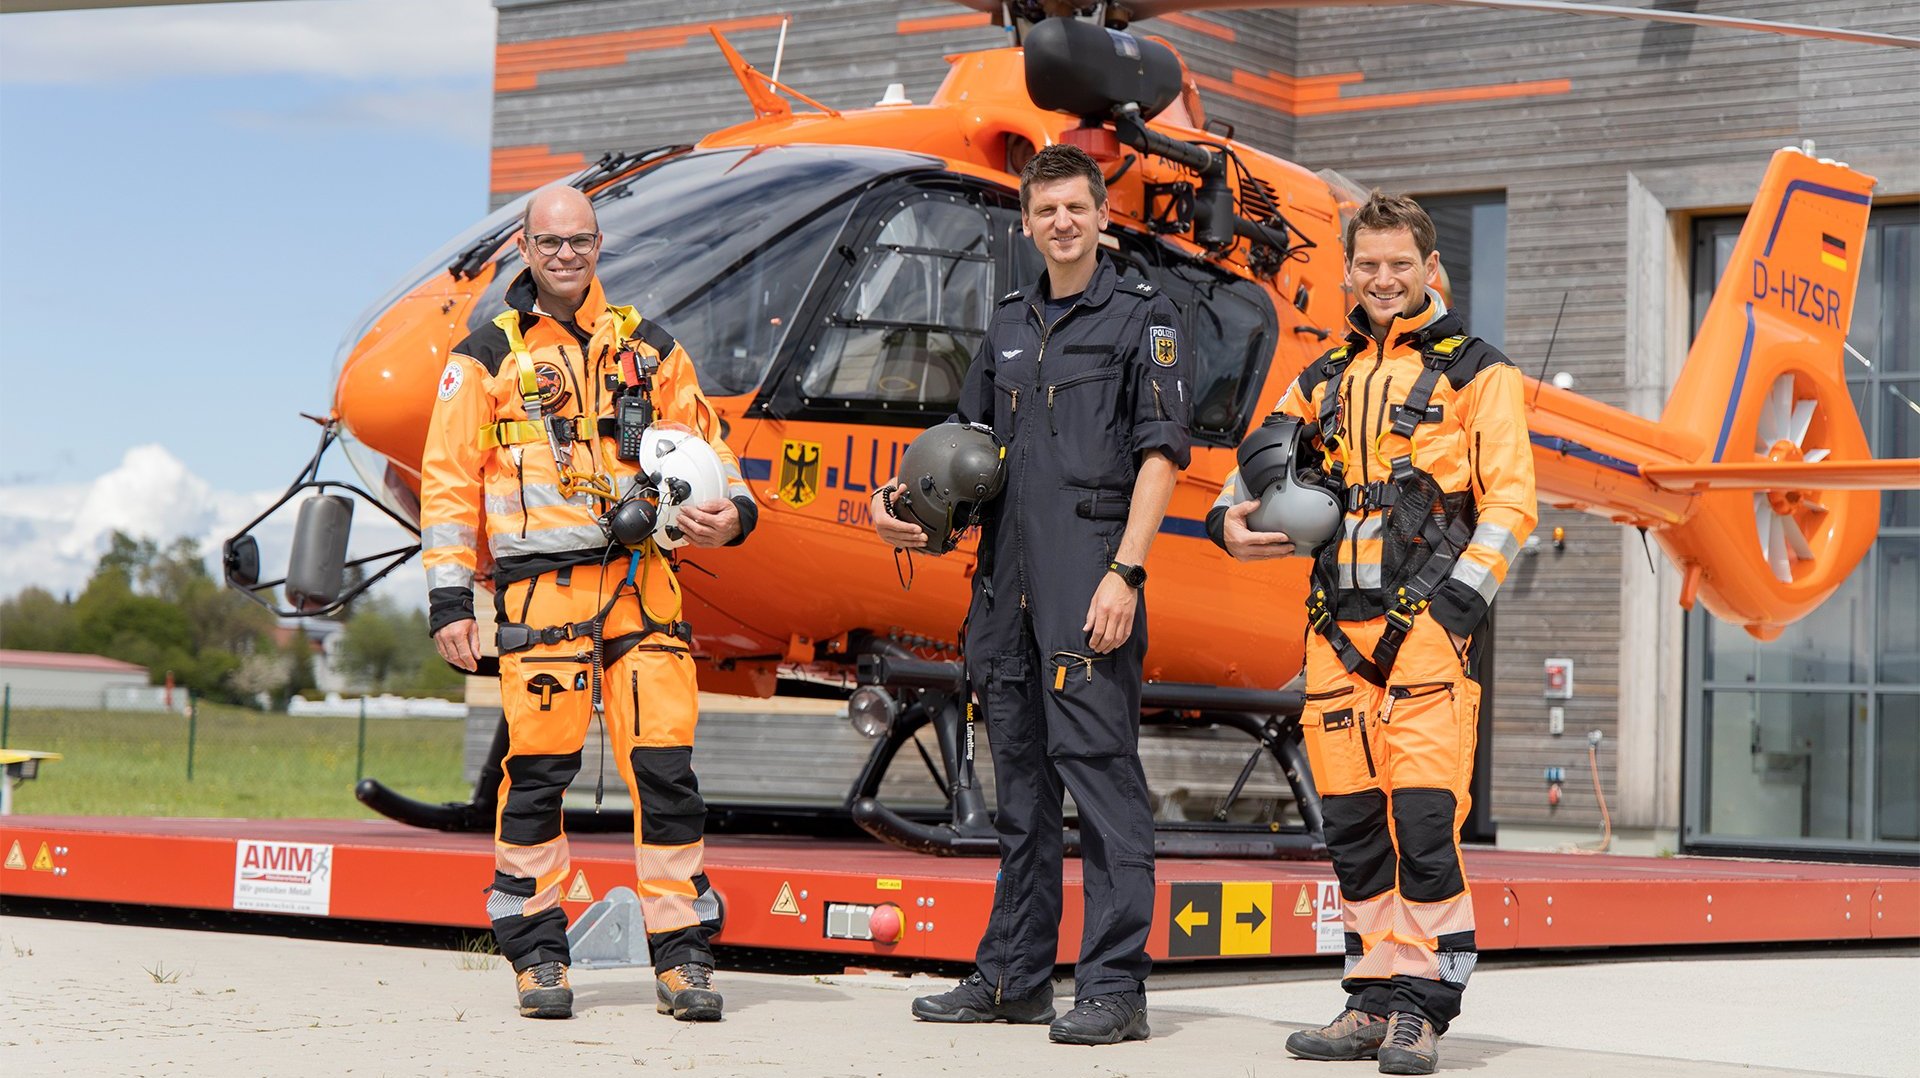 Drei Männer stehen vor einem orangenen deutschen Rettungshubschrauber. Zwei der Männer sind vom roten Kreuz und tragen orangene Anzüge, einer ist von der Polizei und trägt eine dunkelblaue Uniform.